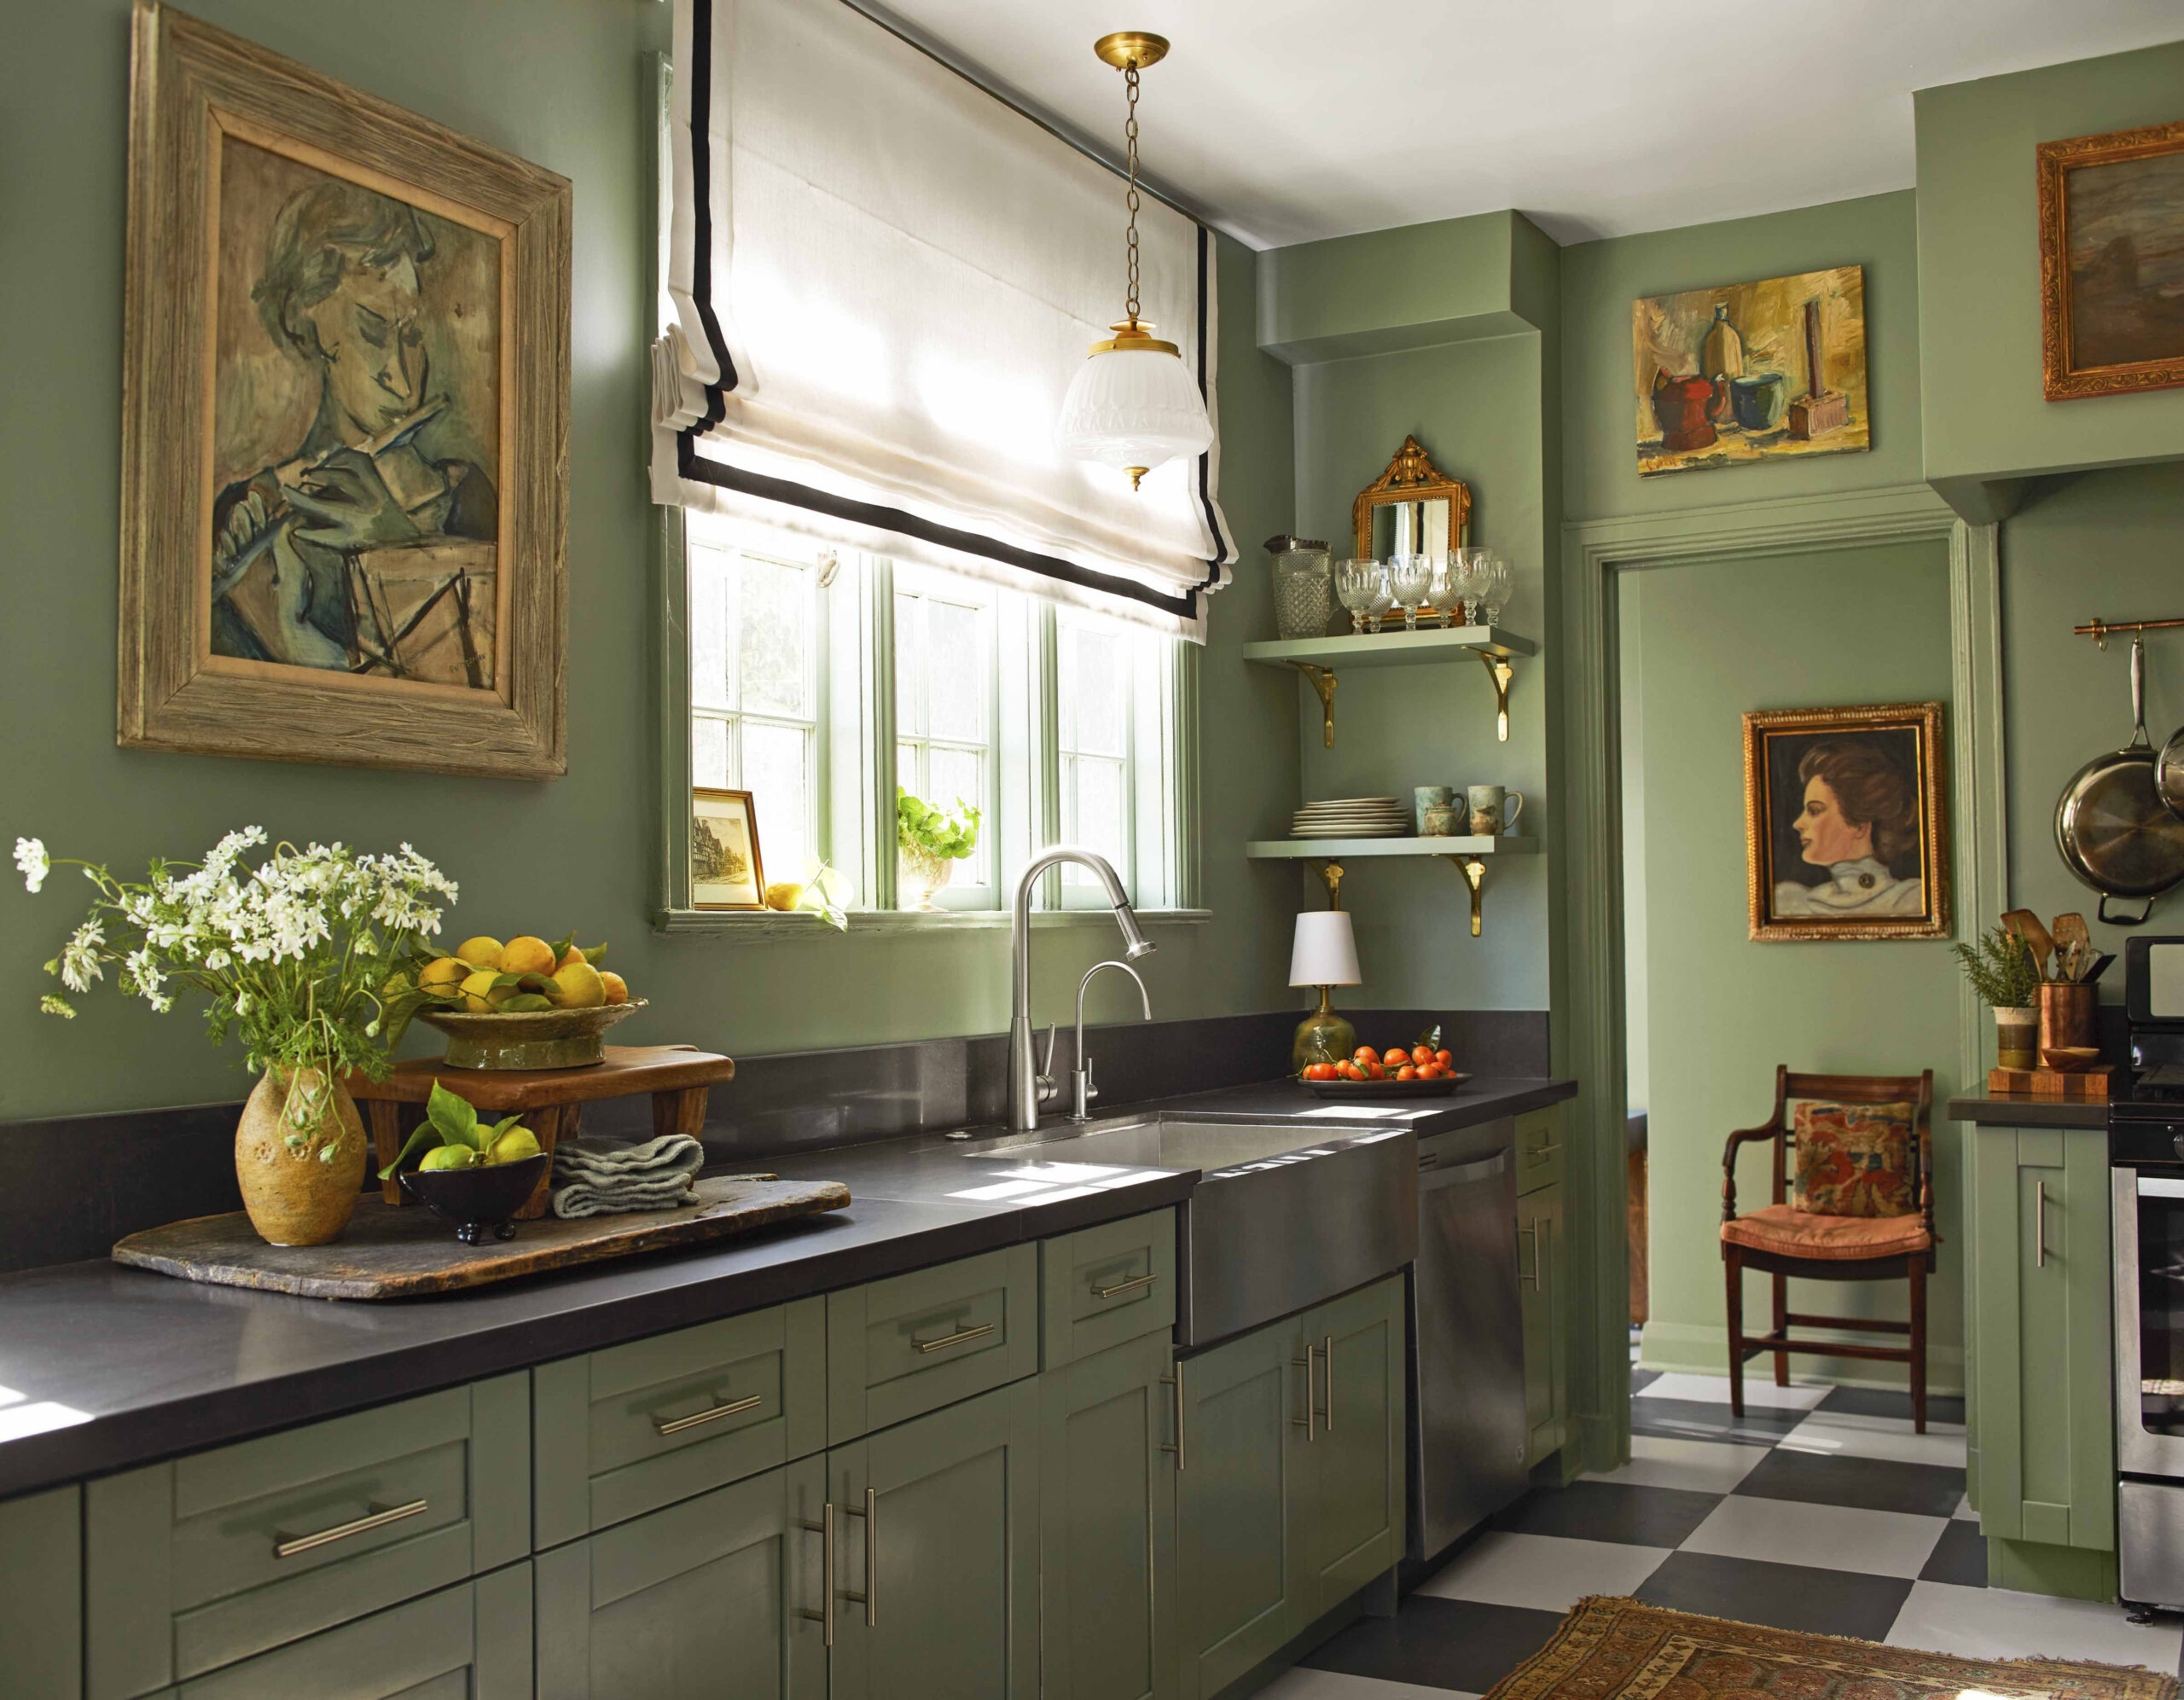 Best Kitchen Cabinet Ideas - Beautiful Kitchen Cabinet Design